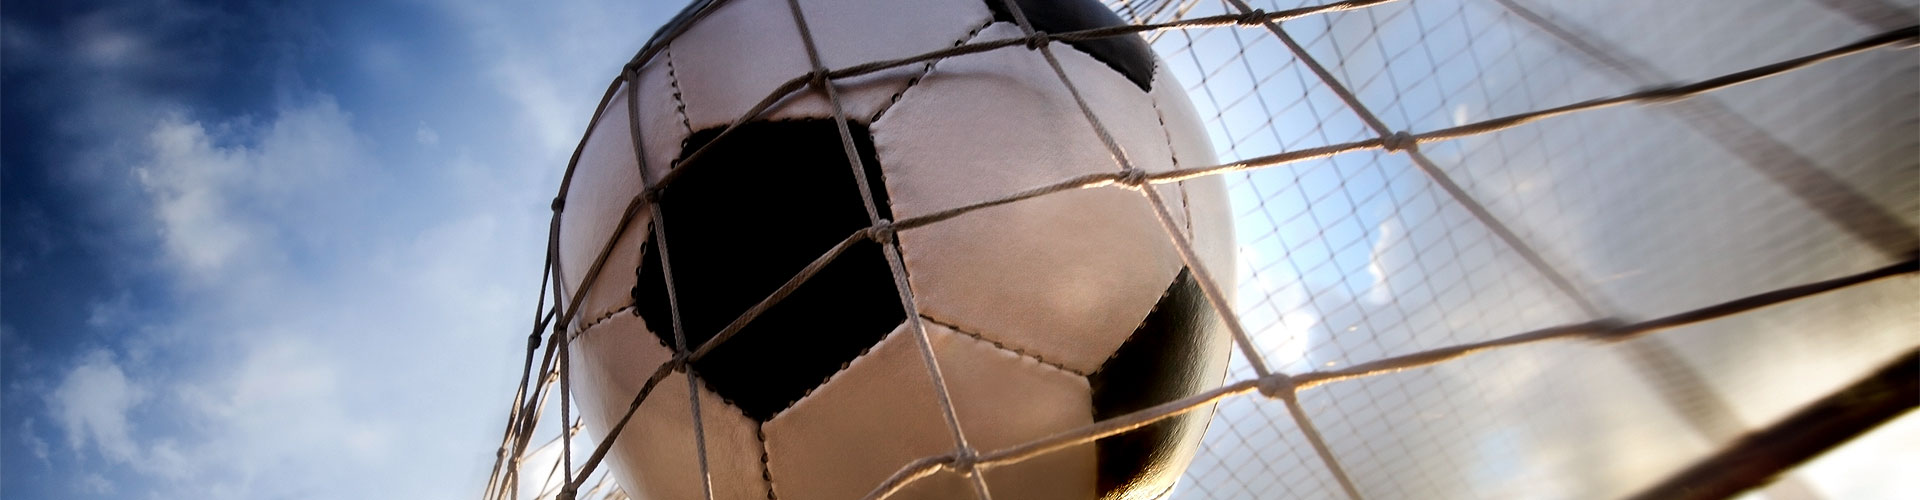 Ver la Eurocopa 2020 de fútbol en vivo en Sant Domí